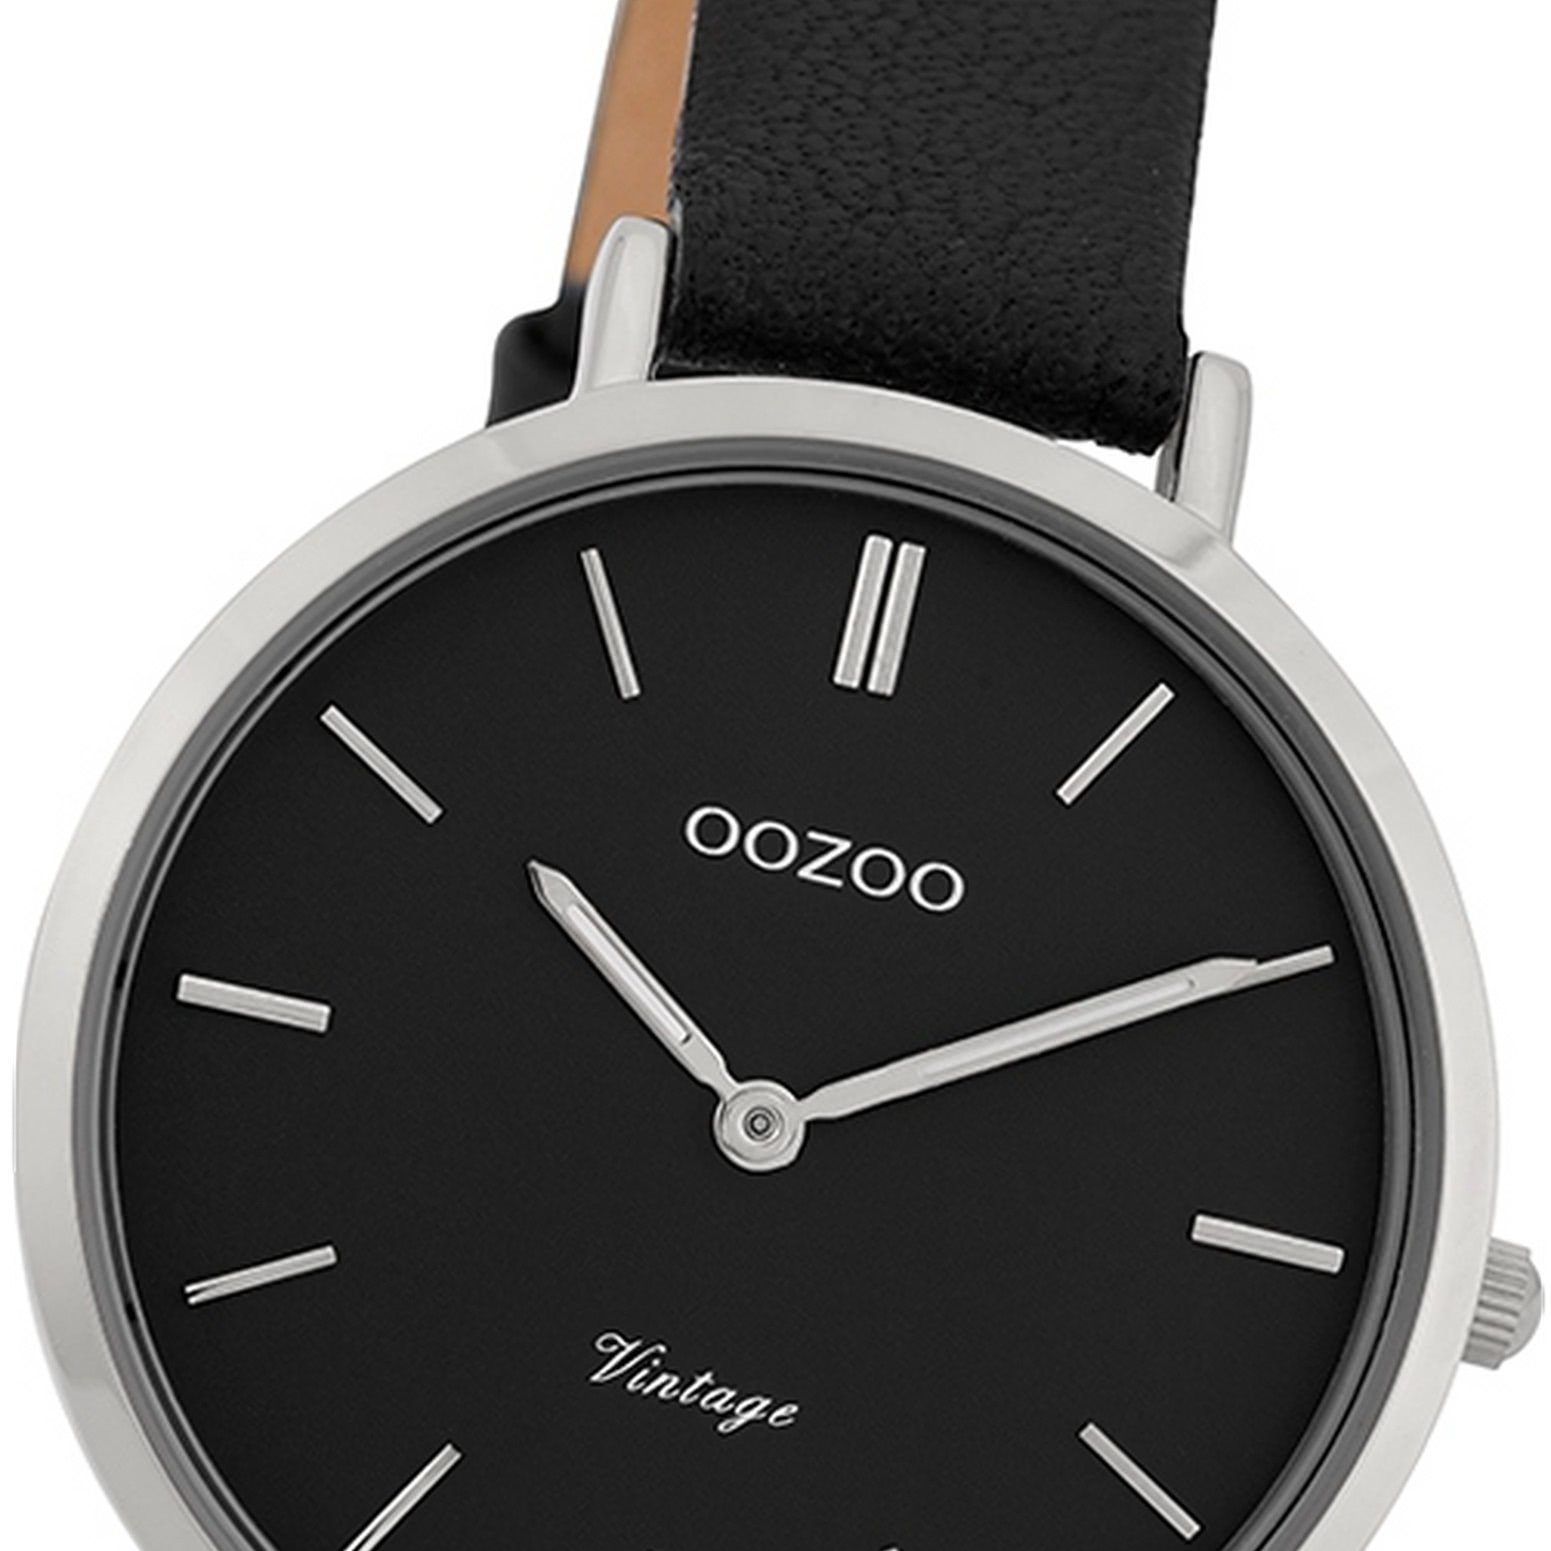 Fashion-Style schwarz, Damenuhr OOZOO Damen Armbanduhr Lederarmband, 34mm) mittel (ca. Oozoo Quarzuhr rund,